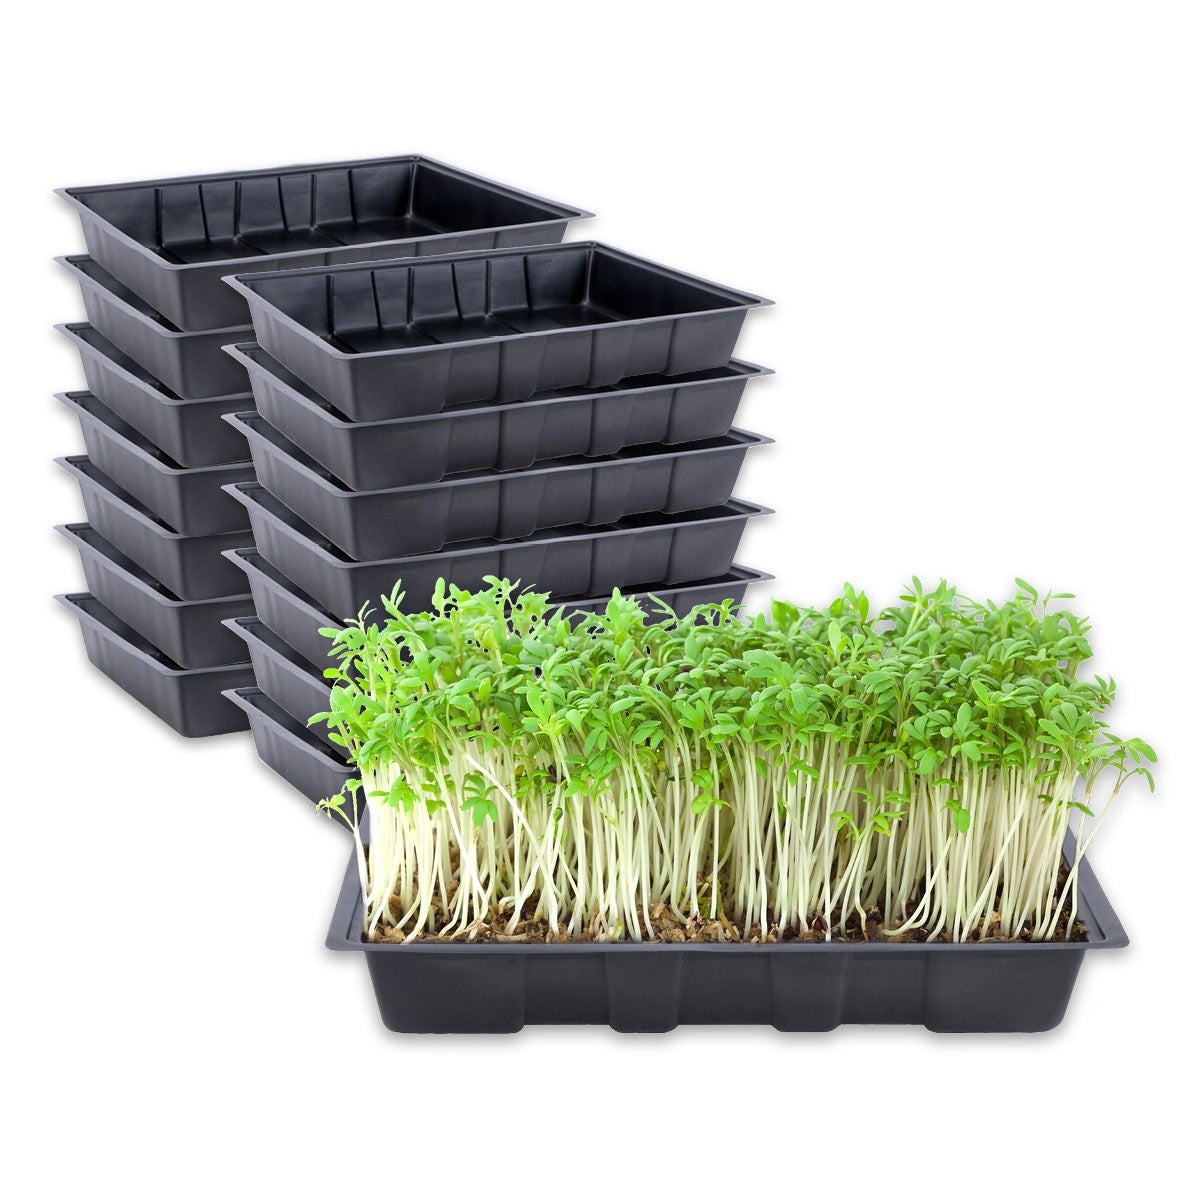 Garden Greens® 15PK Seedling Trays Lightweight Durable Reusable 24 x 35.5cm